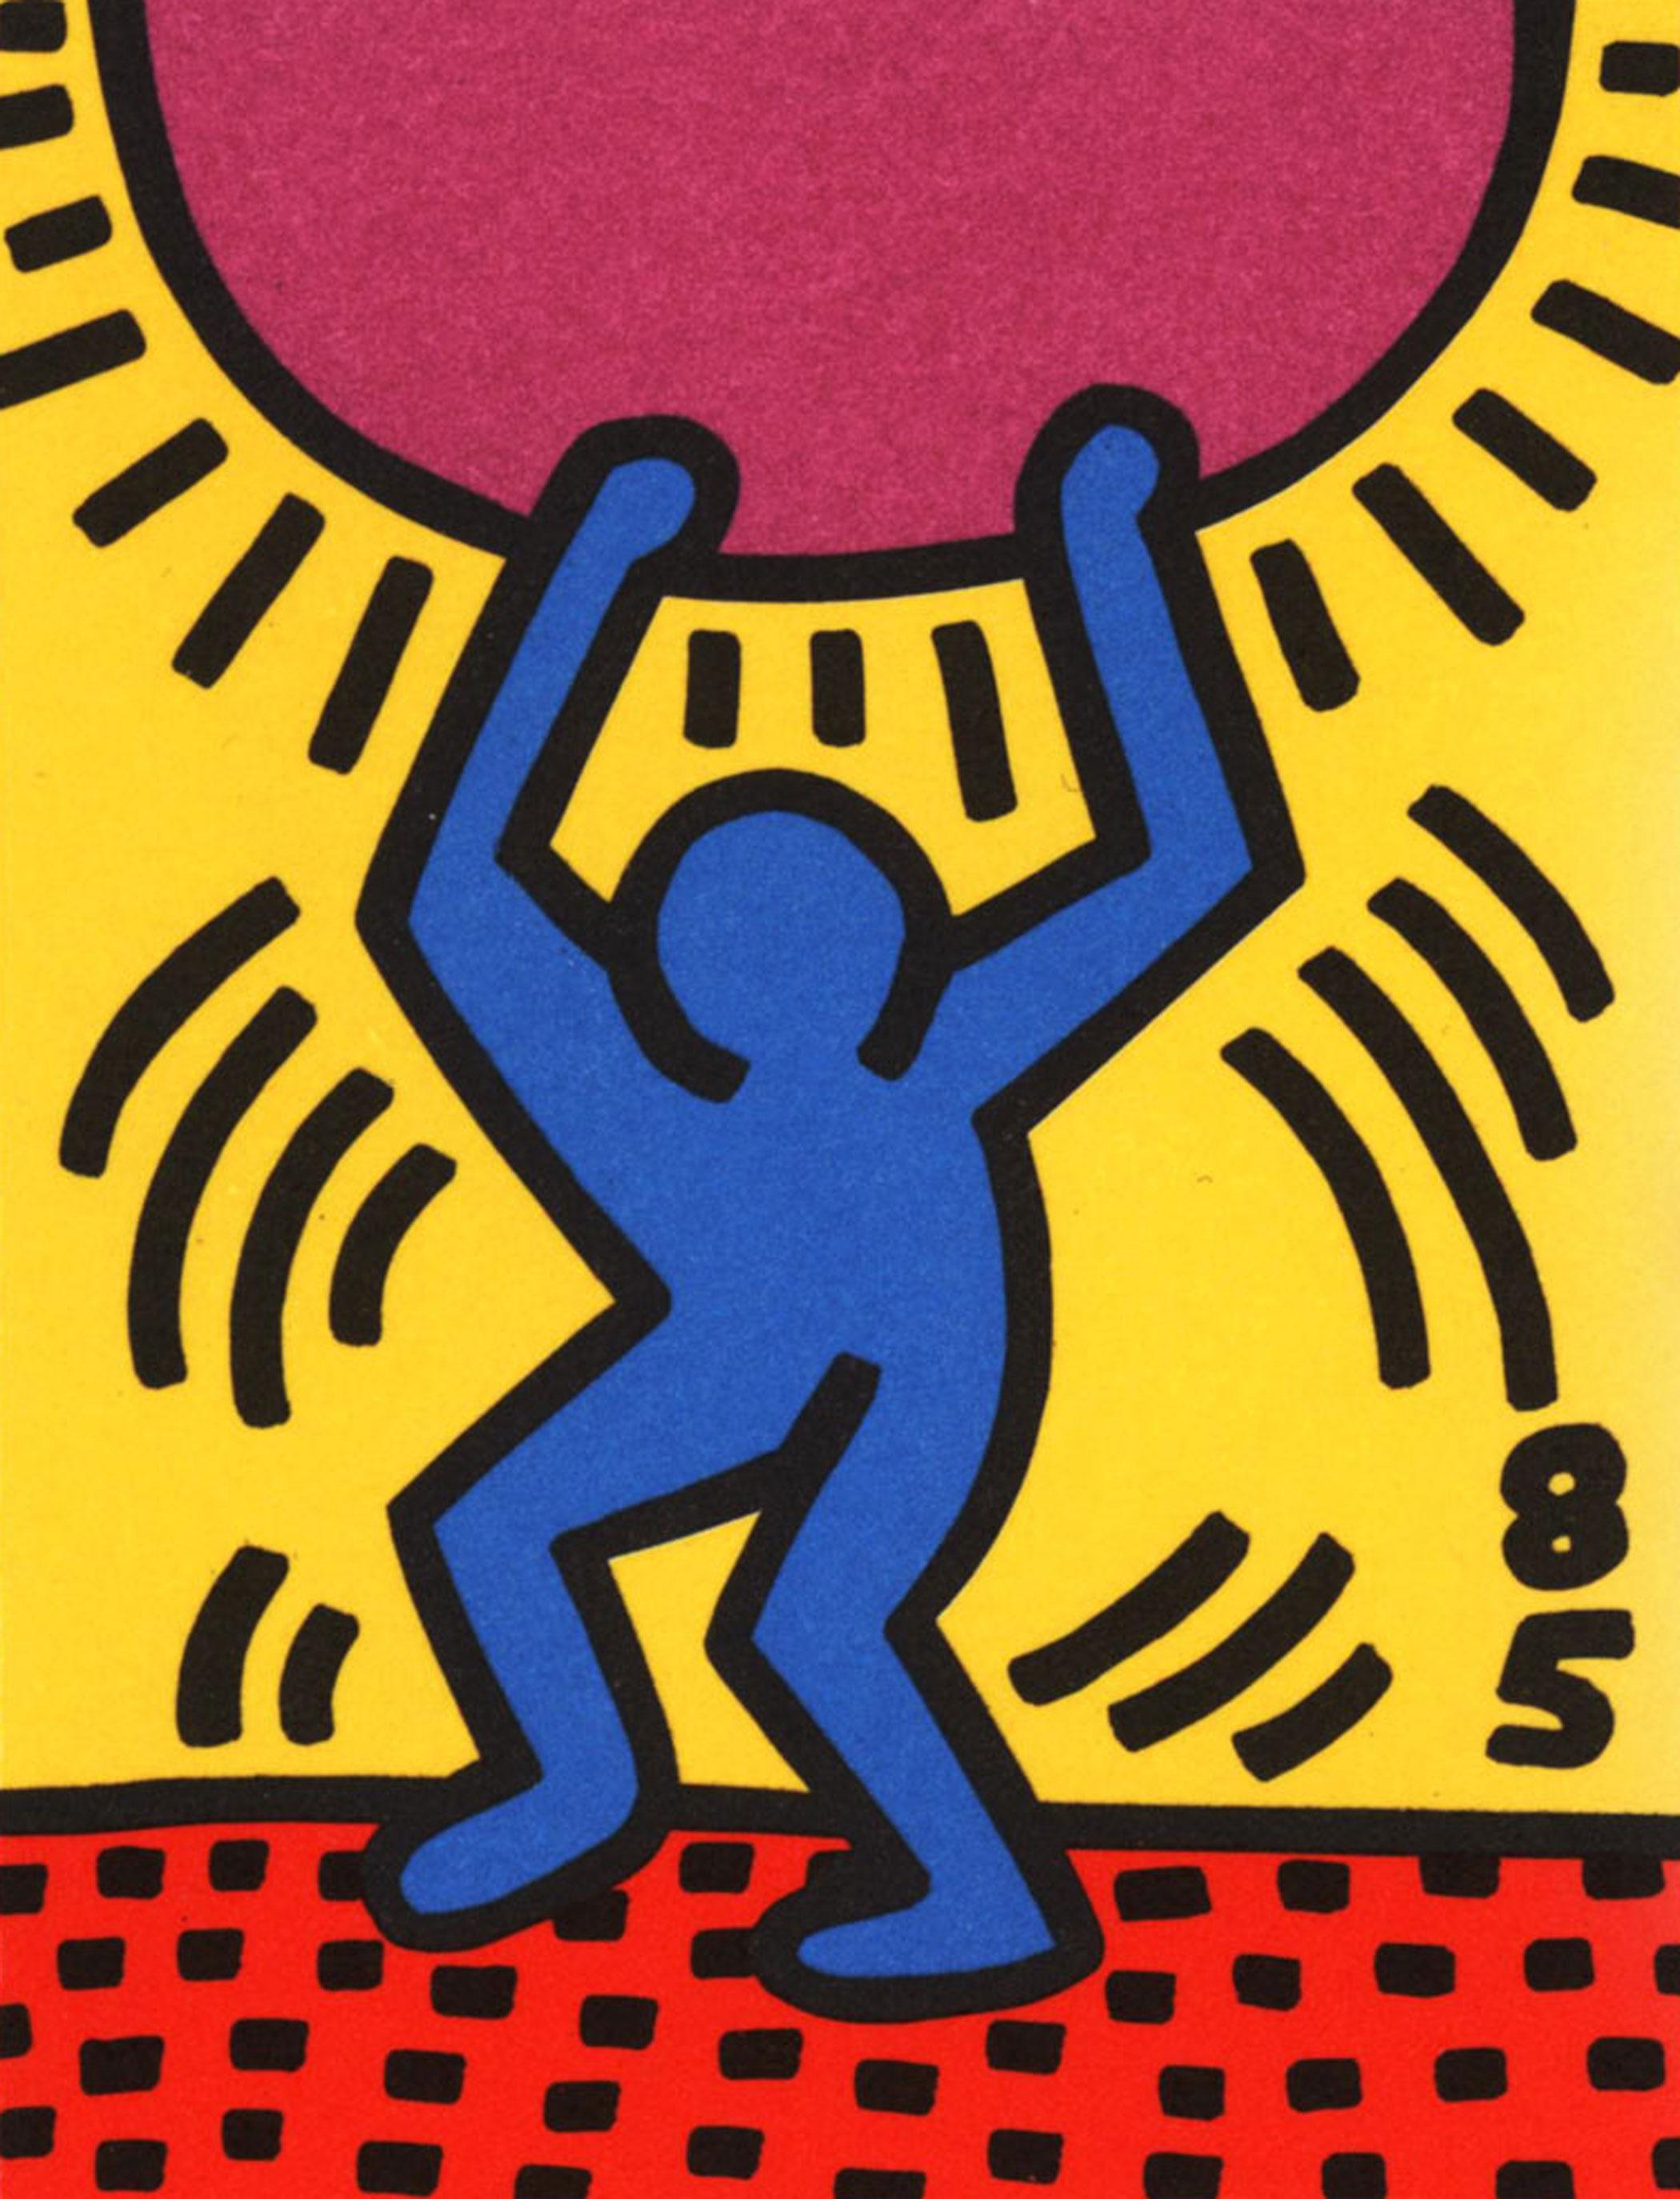 Courrier signé Keith Haring pour la Journée internationale de la jeunesse 1985 :
La "Journée internationale de la jeunesse" est une cause de droits de l'homme créée par la Fédération mondiale des Nations unies / World Annee Internationale de la